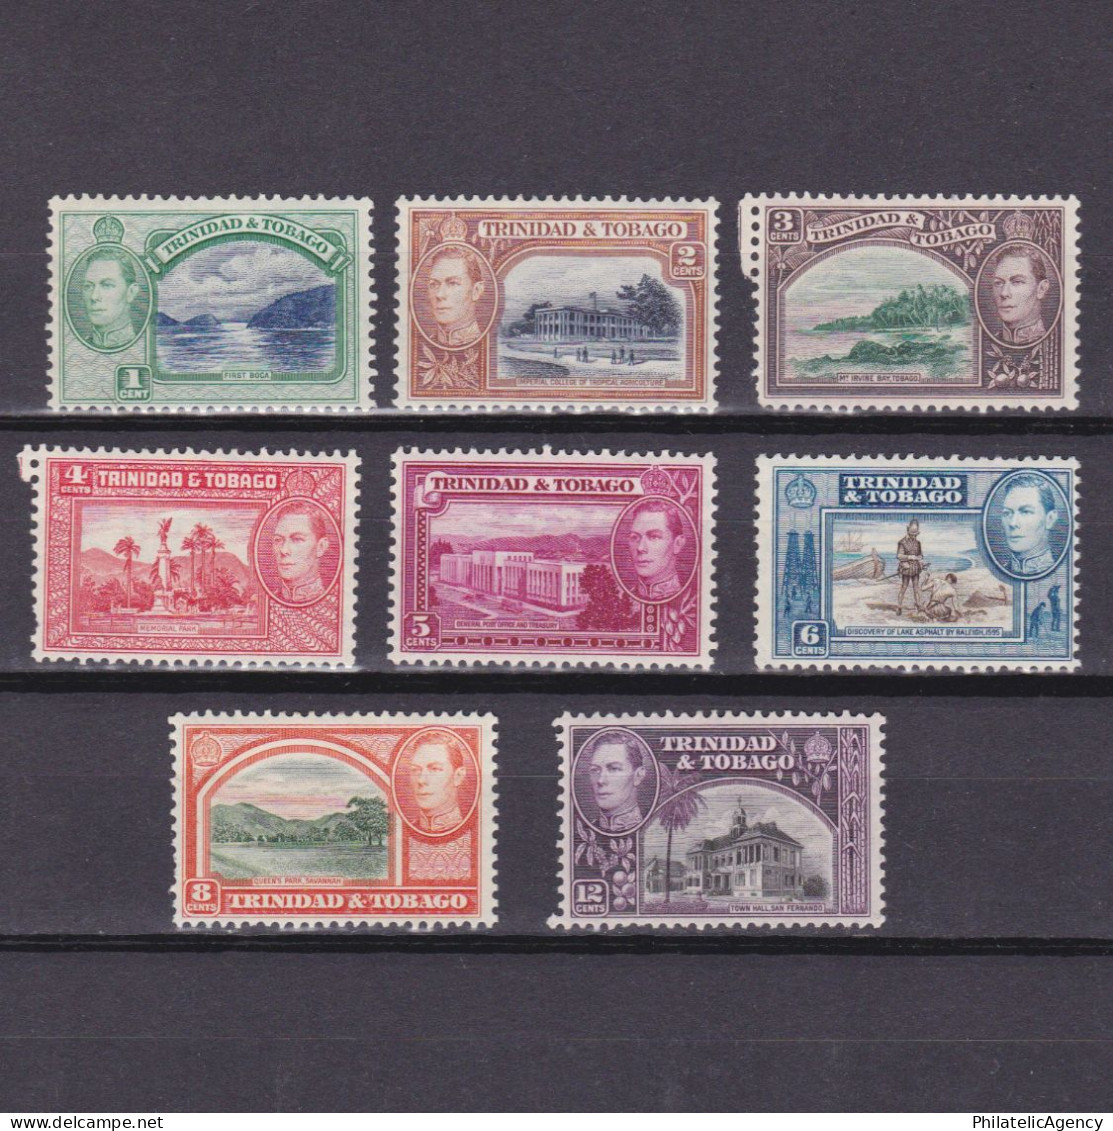 TRINIDAD & TOBAGO 1938, SG #246-252, CV £15, Part Set, MH - Trinidad & Tobago (...-1961)